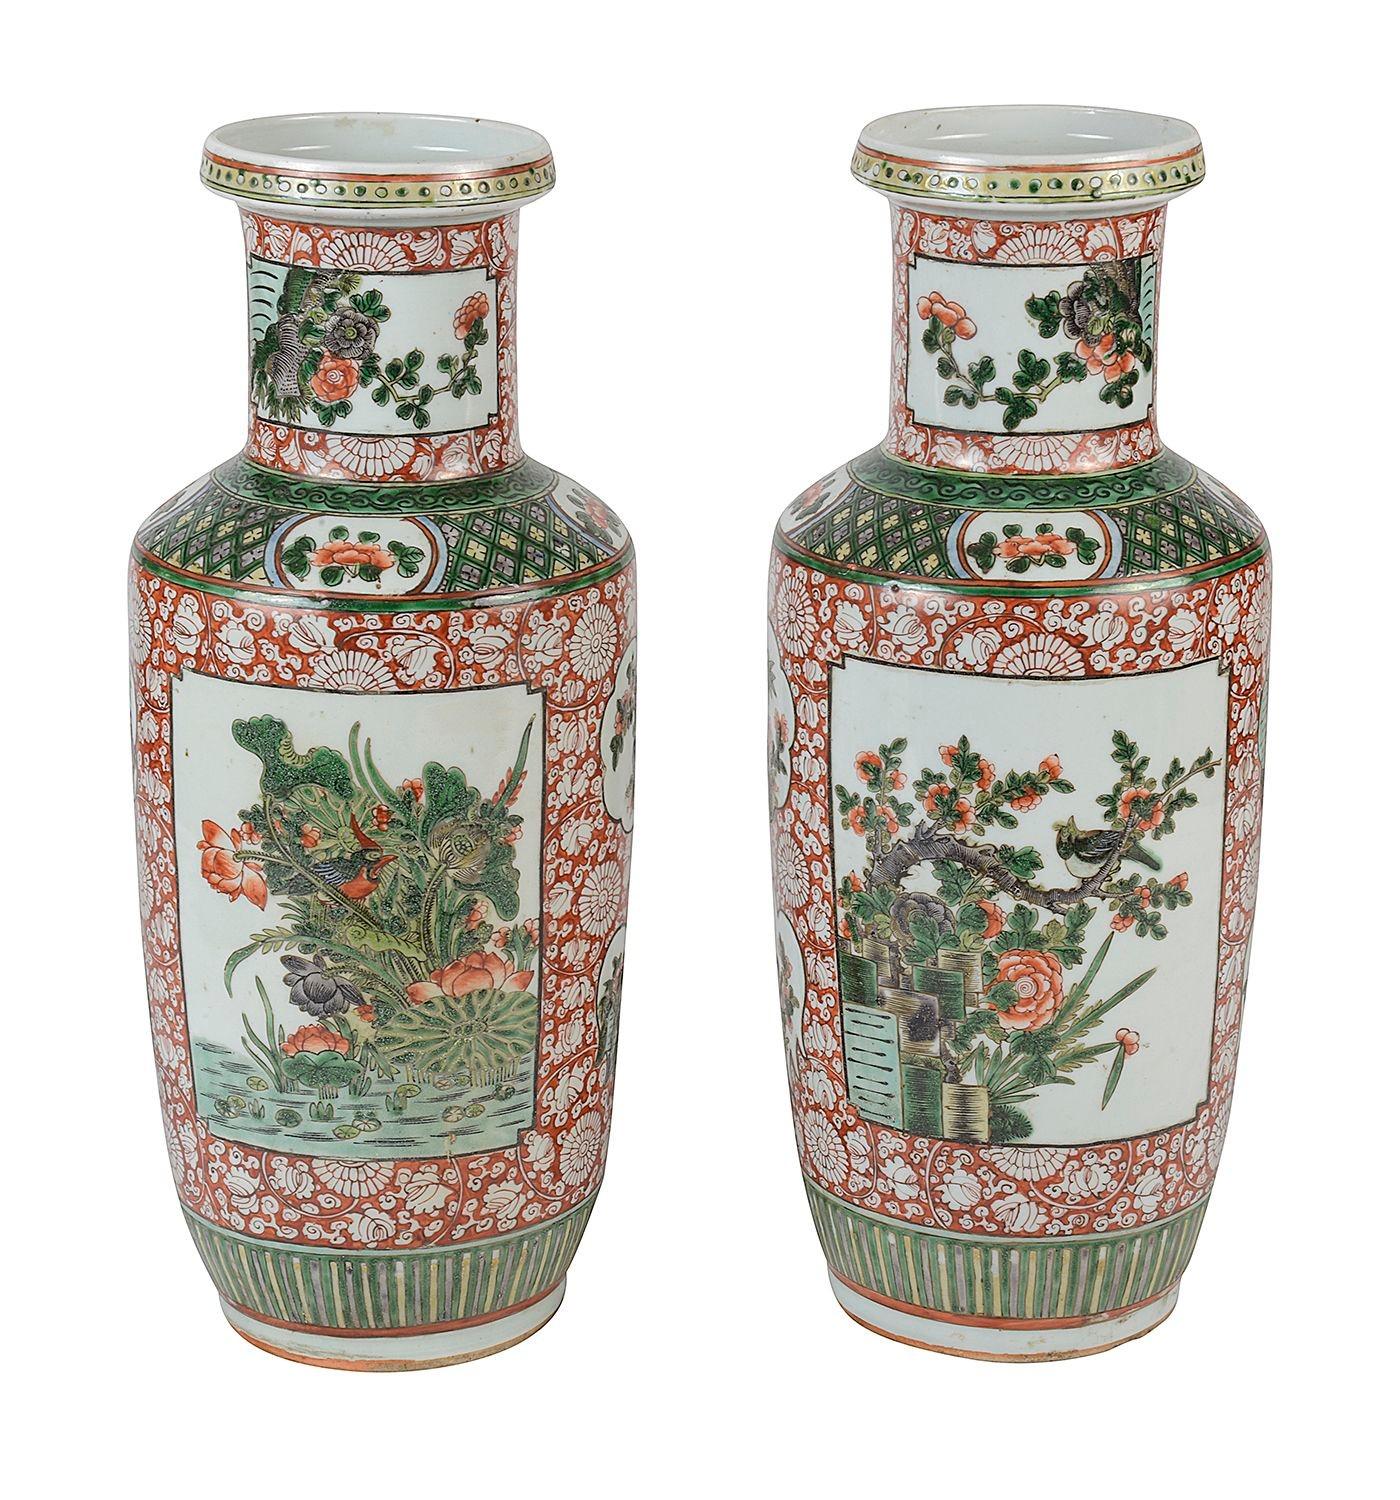 Paire de vases / lampes en porcelaine Famille Verte de Chine de bonne qualité datant de la fin du 19e siècle. Chacune d'entre elles présente un fond vert et orange audacieux. Motif classique et décor de feuillage en volutes. Panneaux peints à la